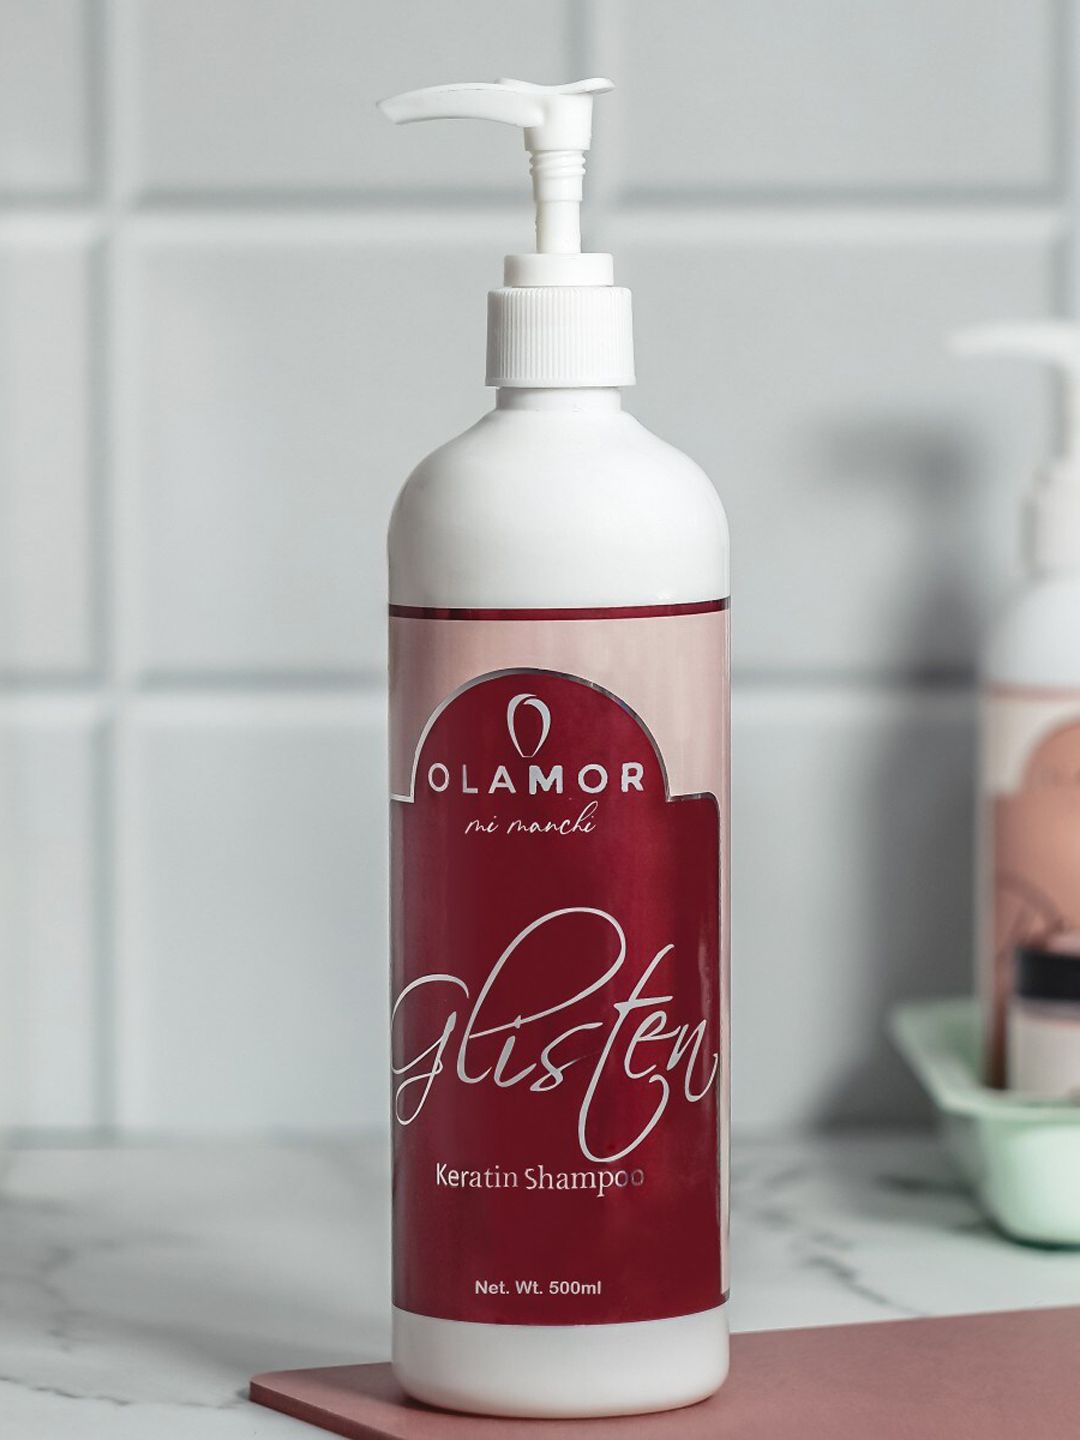 OLAMOR Glisten Keratin Shampoo- Sulfate Free 500 ml Price in India